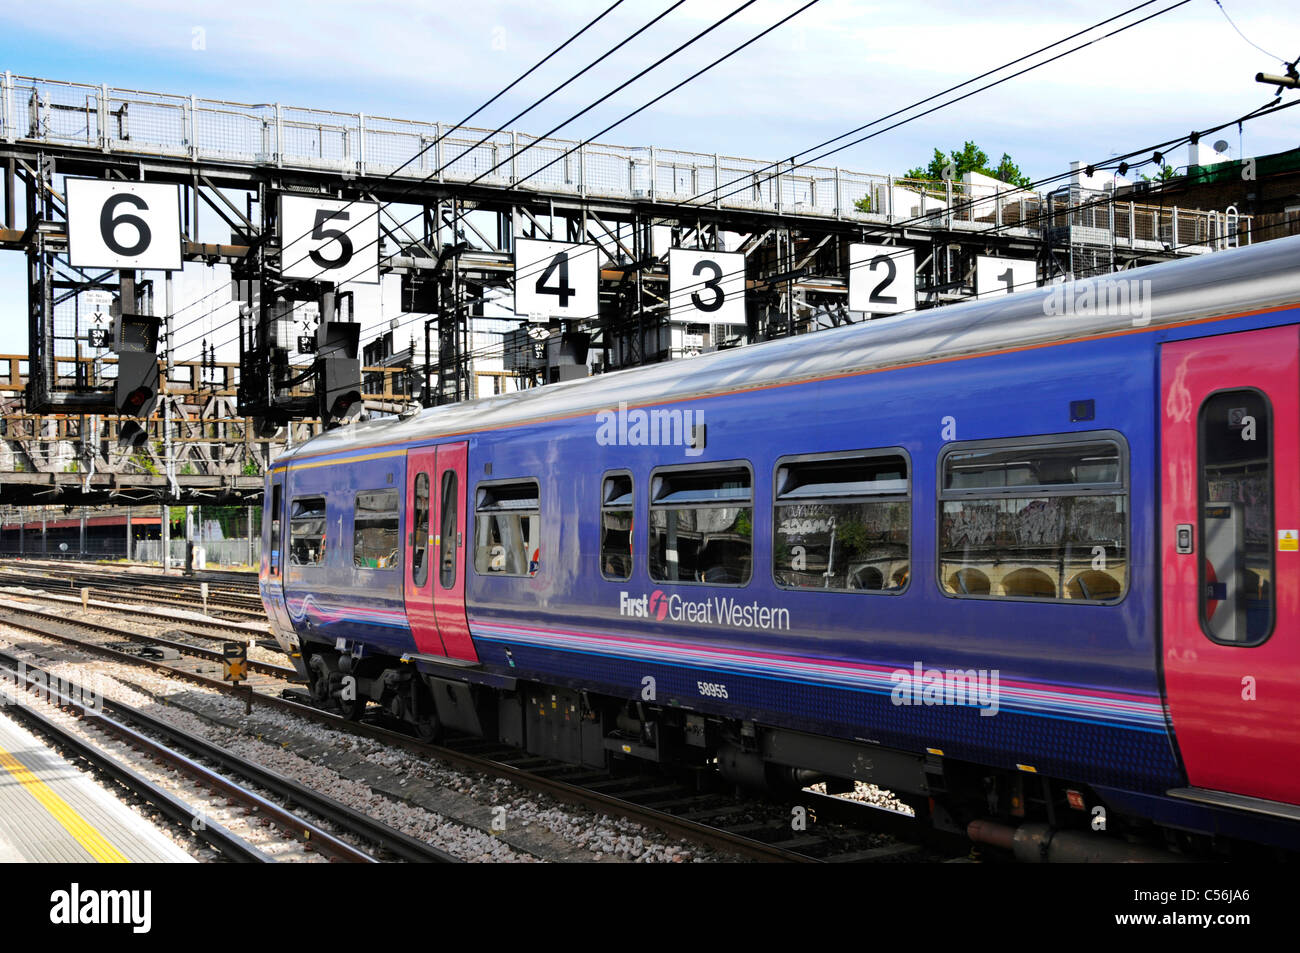 Erster Great Western-Zug unter der Royal Oak-Signalbrücke mit sehr großen Zahlen auf dem Weg zur Paddington Station London England Großbritannien Stockfoto